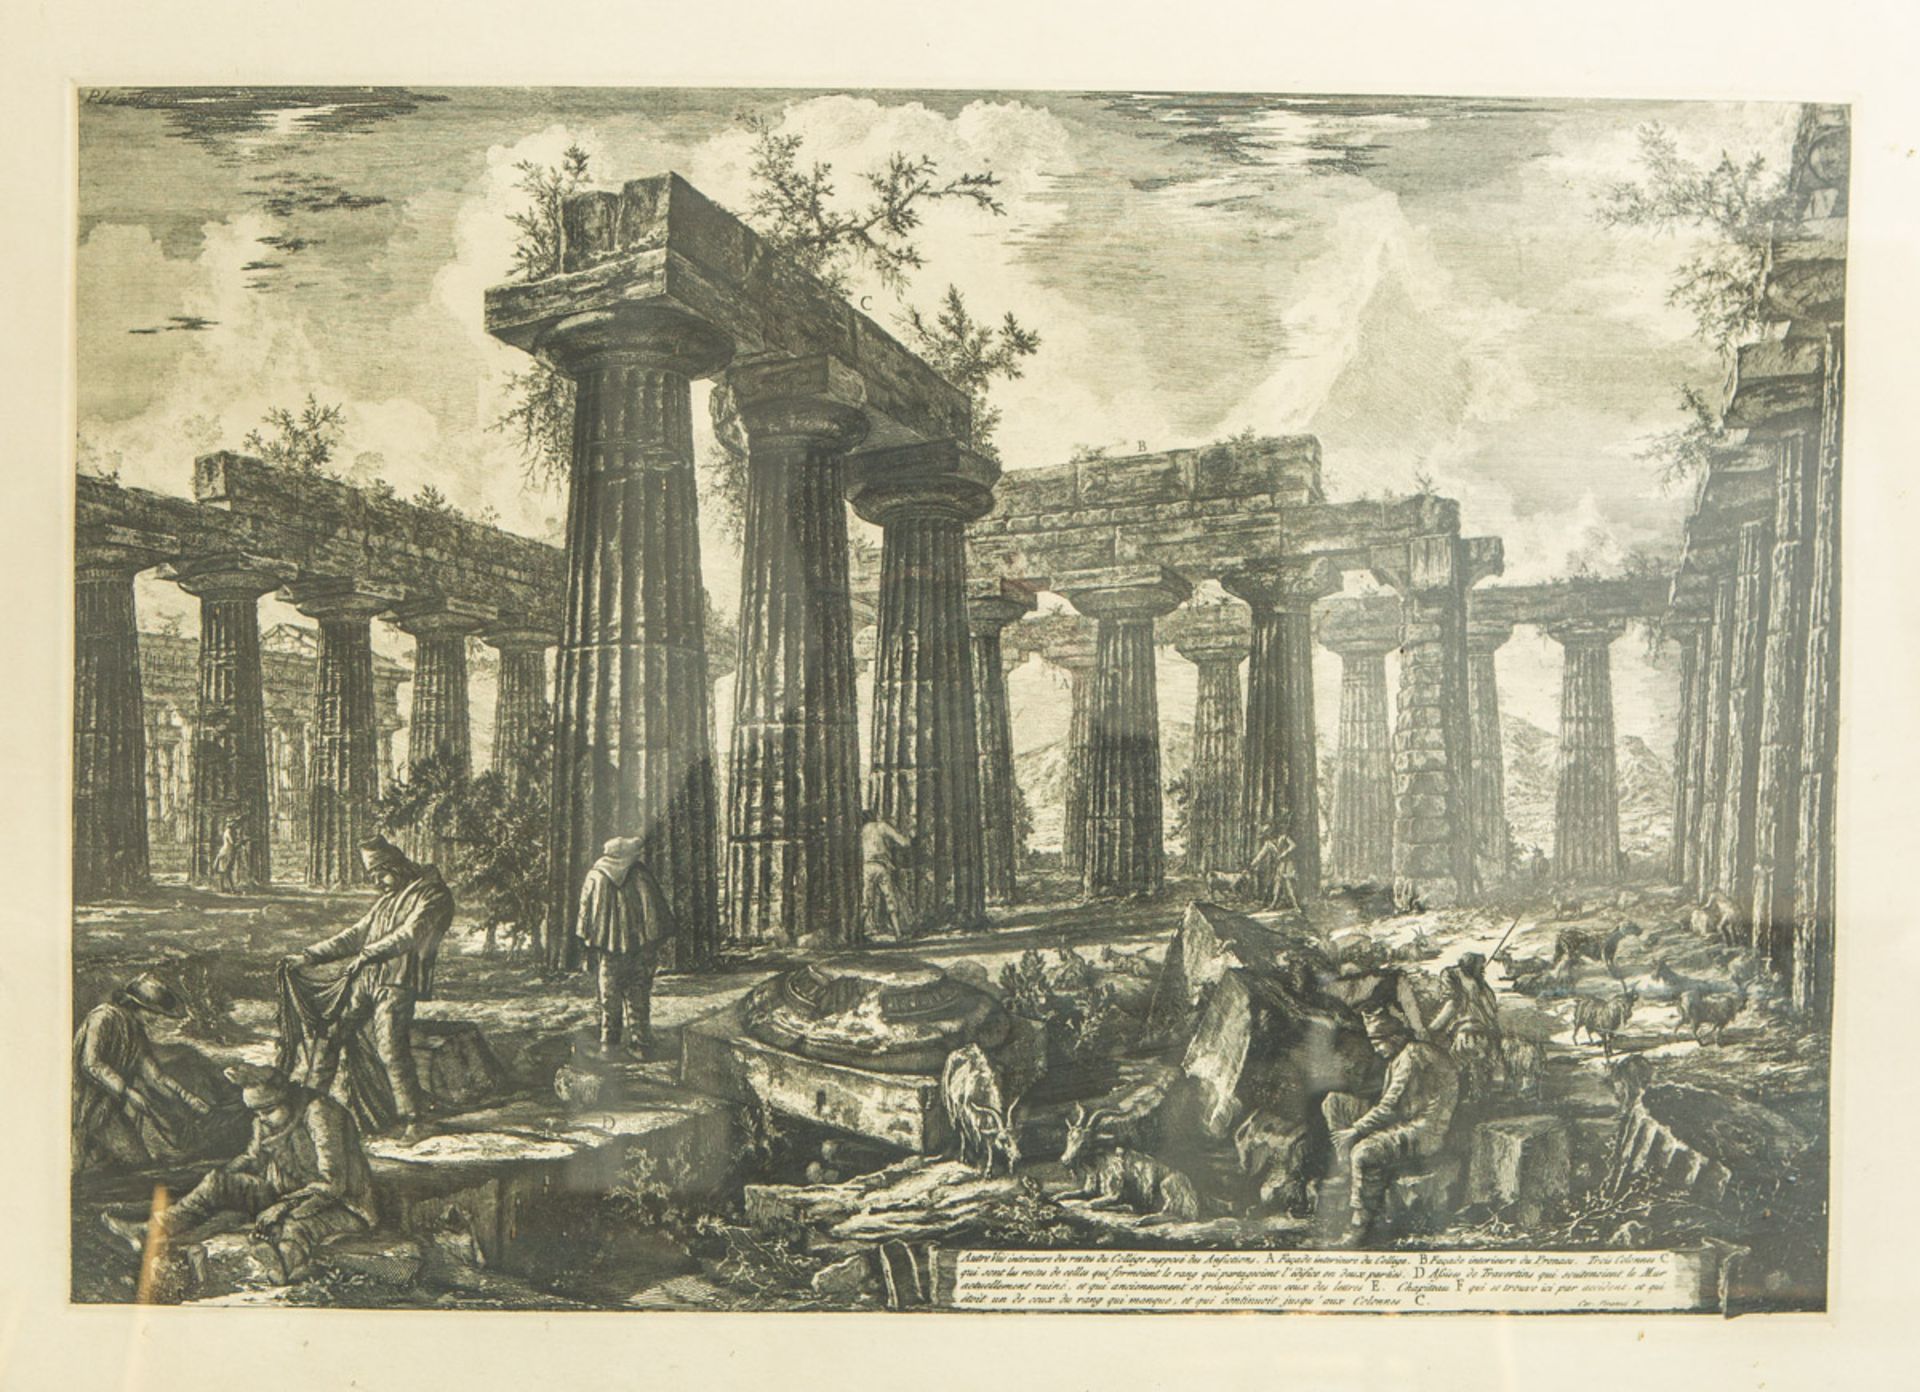 Piranesi, Giovanni Battista (1720 - 1778), "Autre Vüe interieure des restes du Collége supposé des A